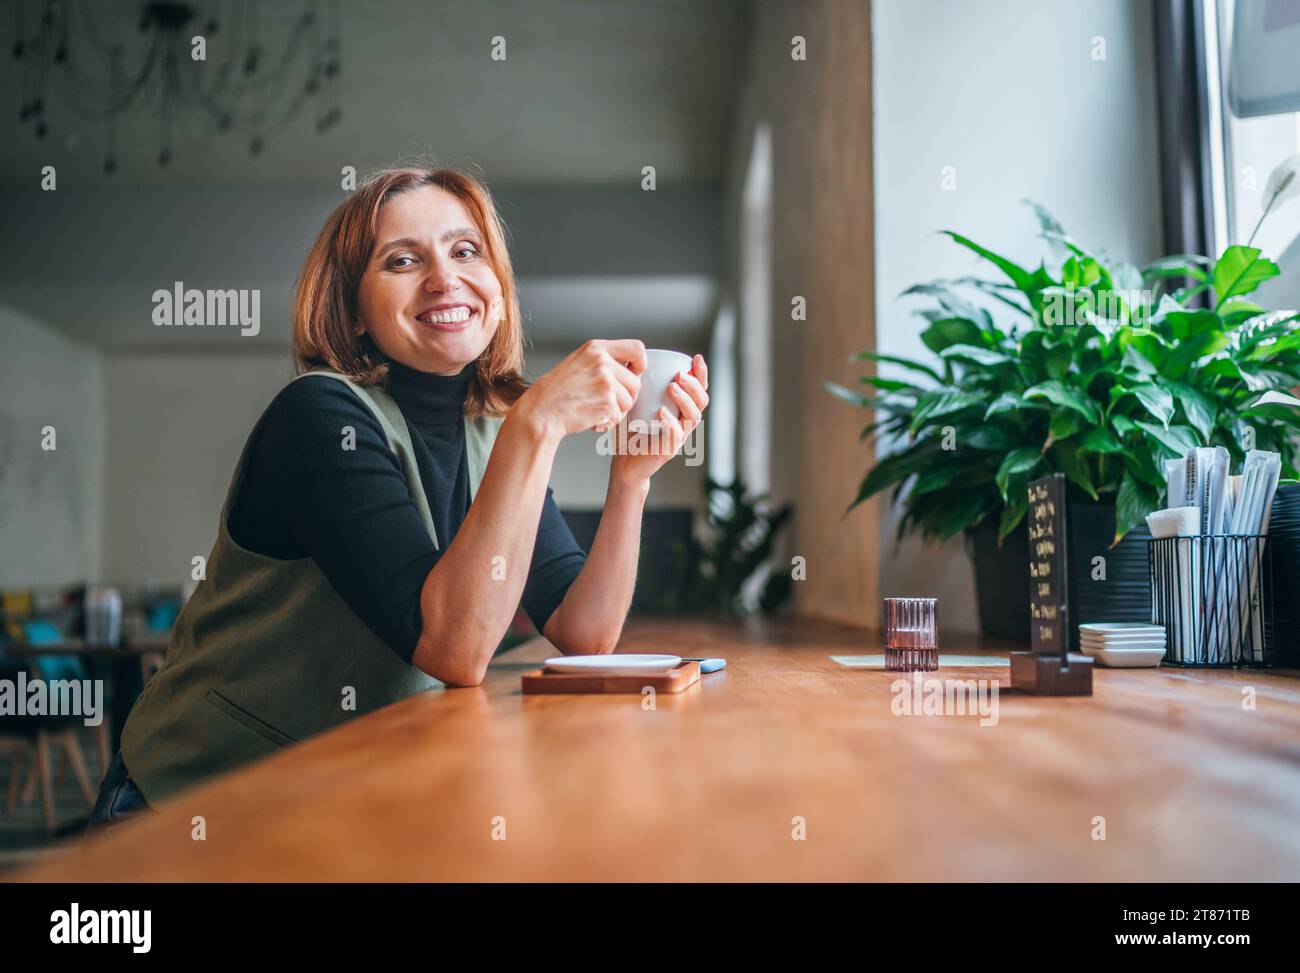 Portrait de femme caucasienne brune sincèrement souriante assise à table dans un café confortable avec une petite tasse de café aromatique, jonchée de lumière du matin de fenêtre Banque D'Images